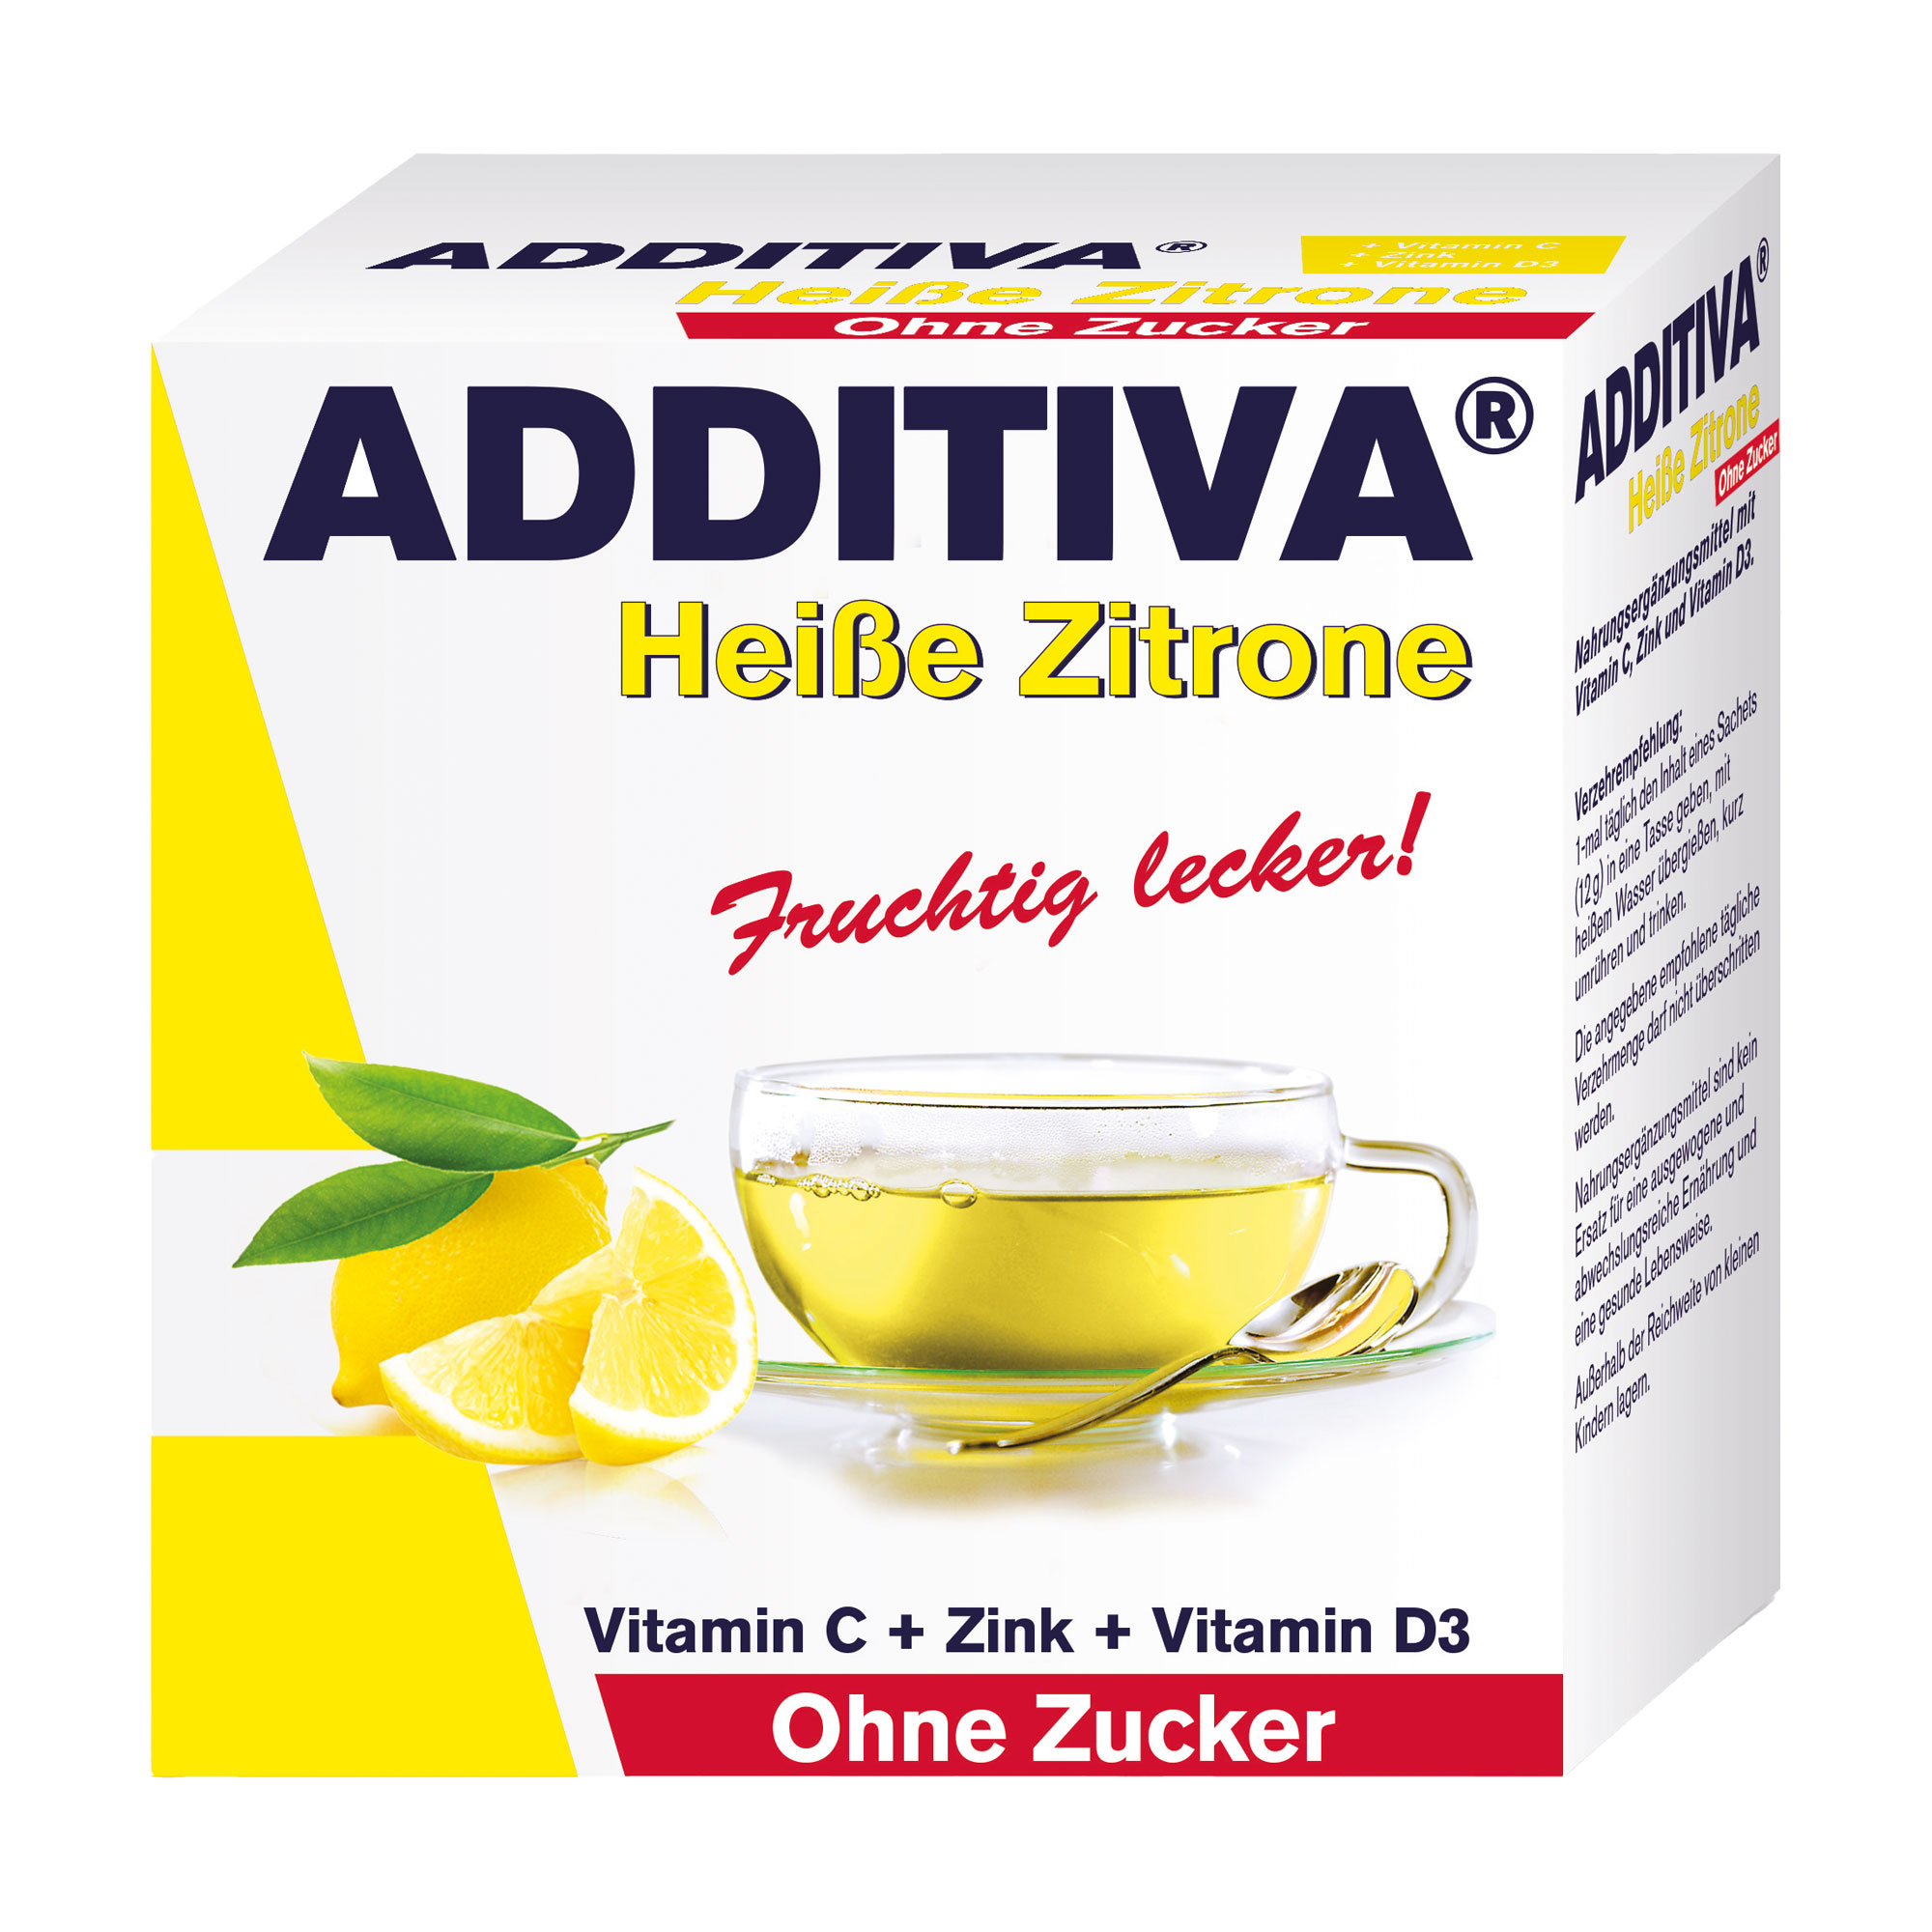 Nahrungsergänzungsmittel mit Vitamin C, Zink und Vitamin D3. Aromatisiert mit Zitronengeschmack.